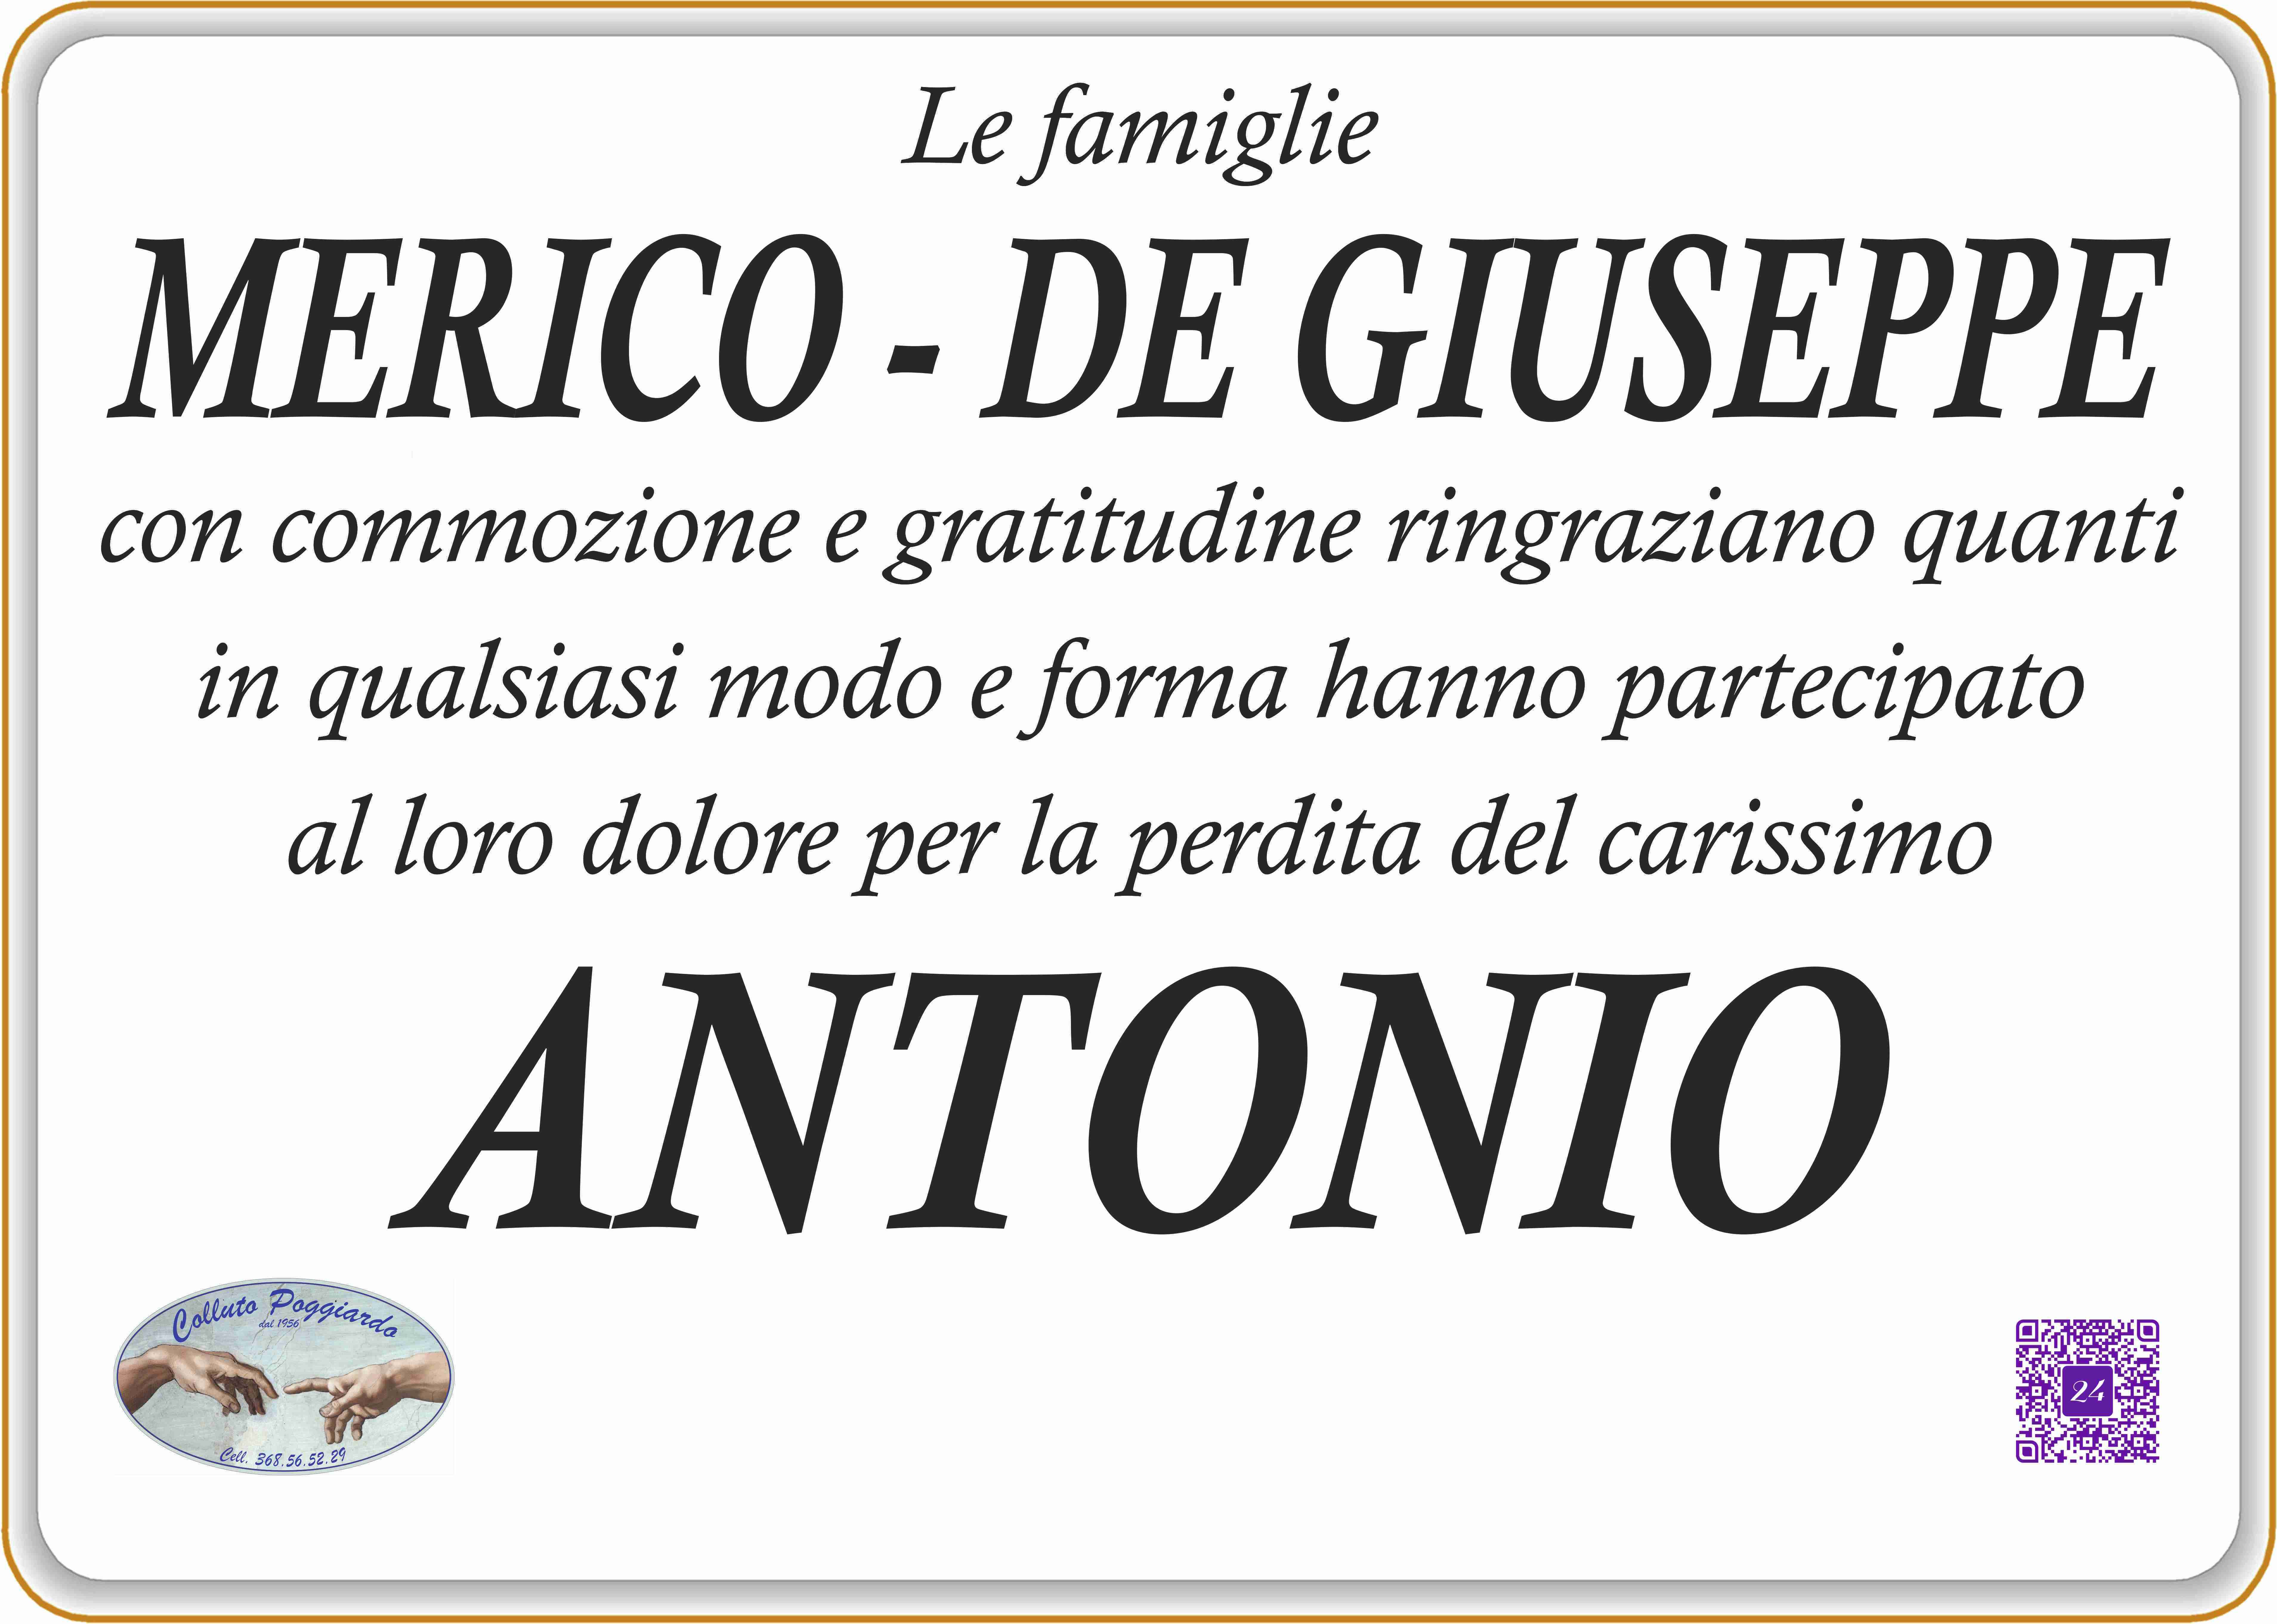 Antonio Merico